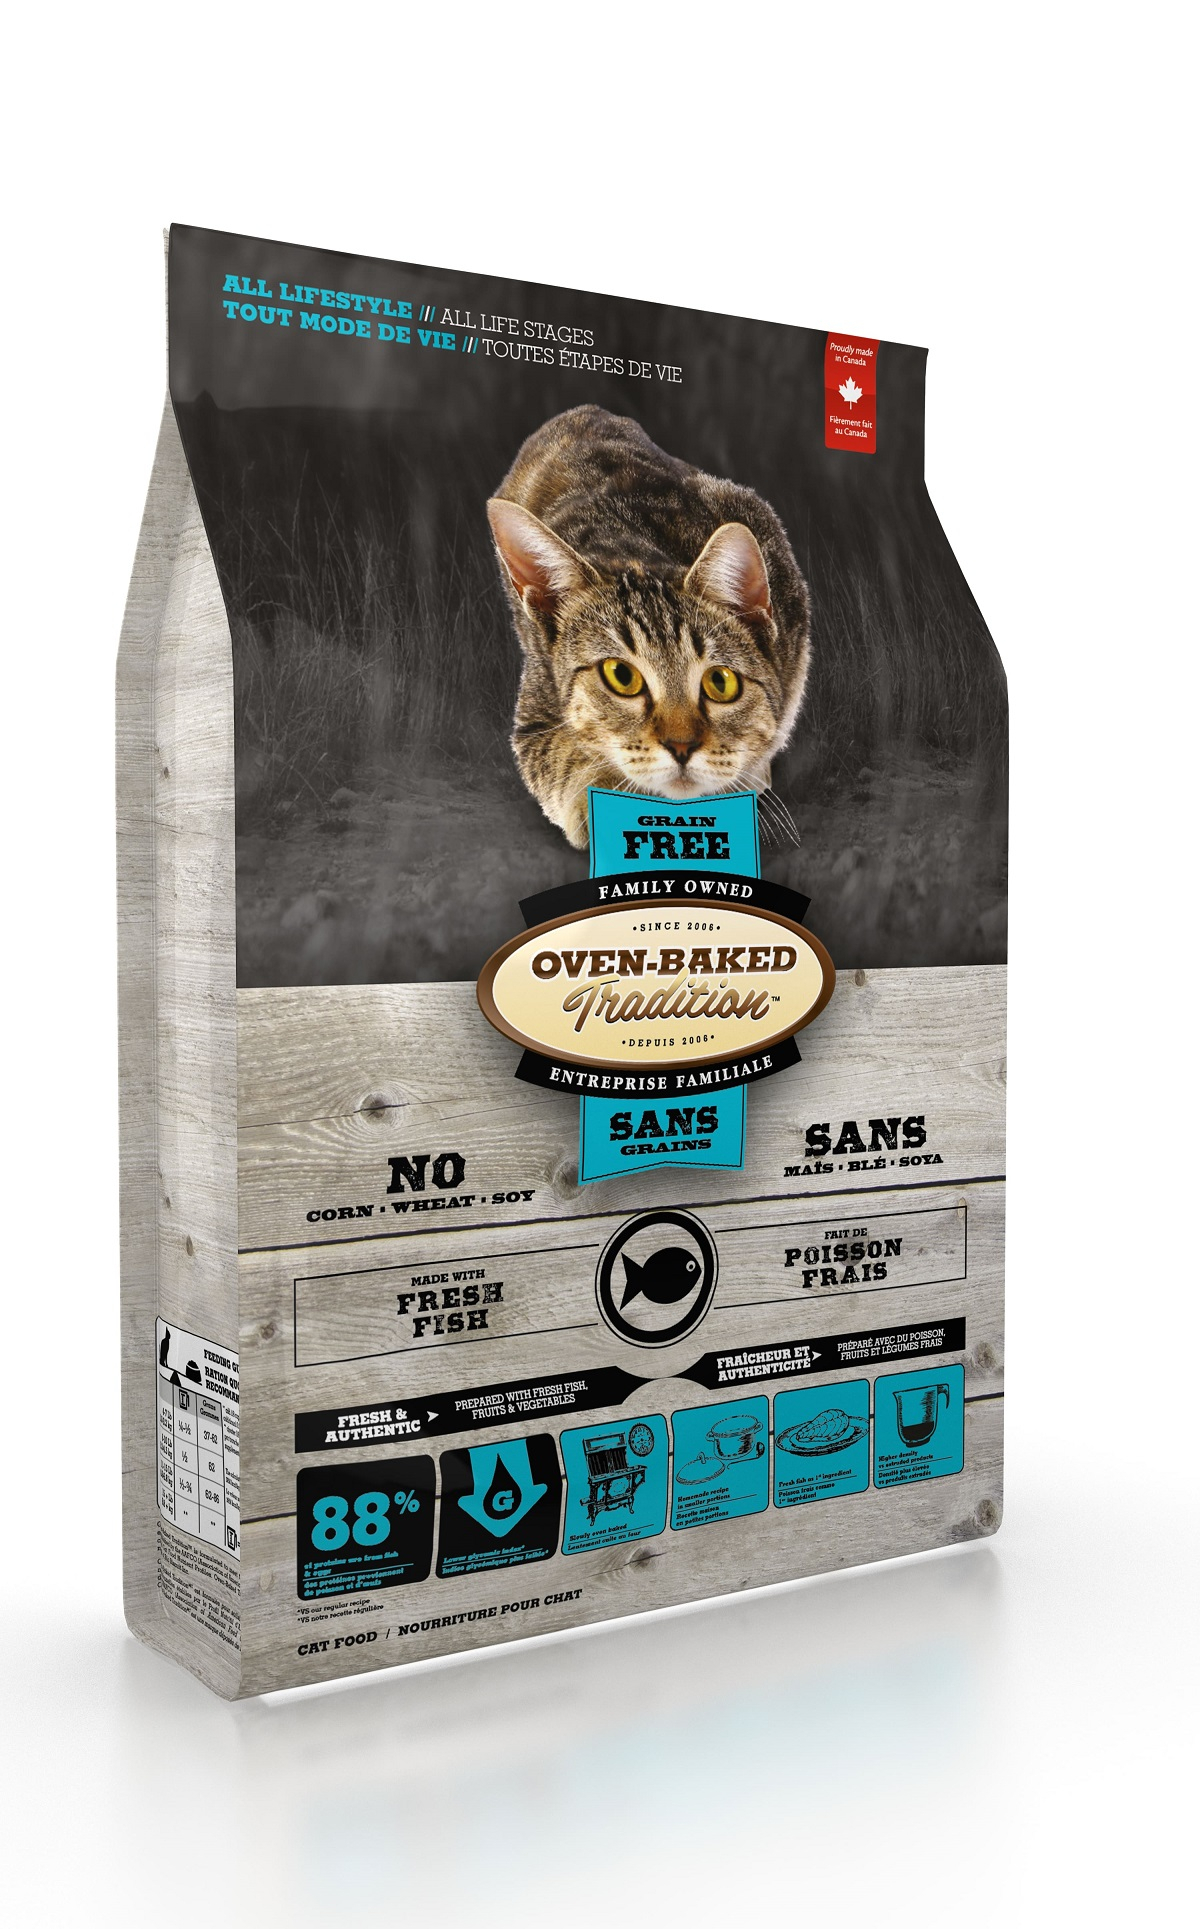 Pienso OVEN-BAKED TRADITION Grain Free para gatos con Pescado sin cereales